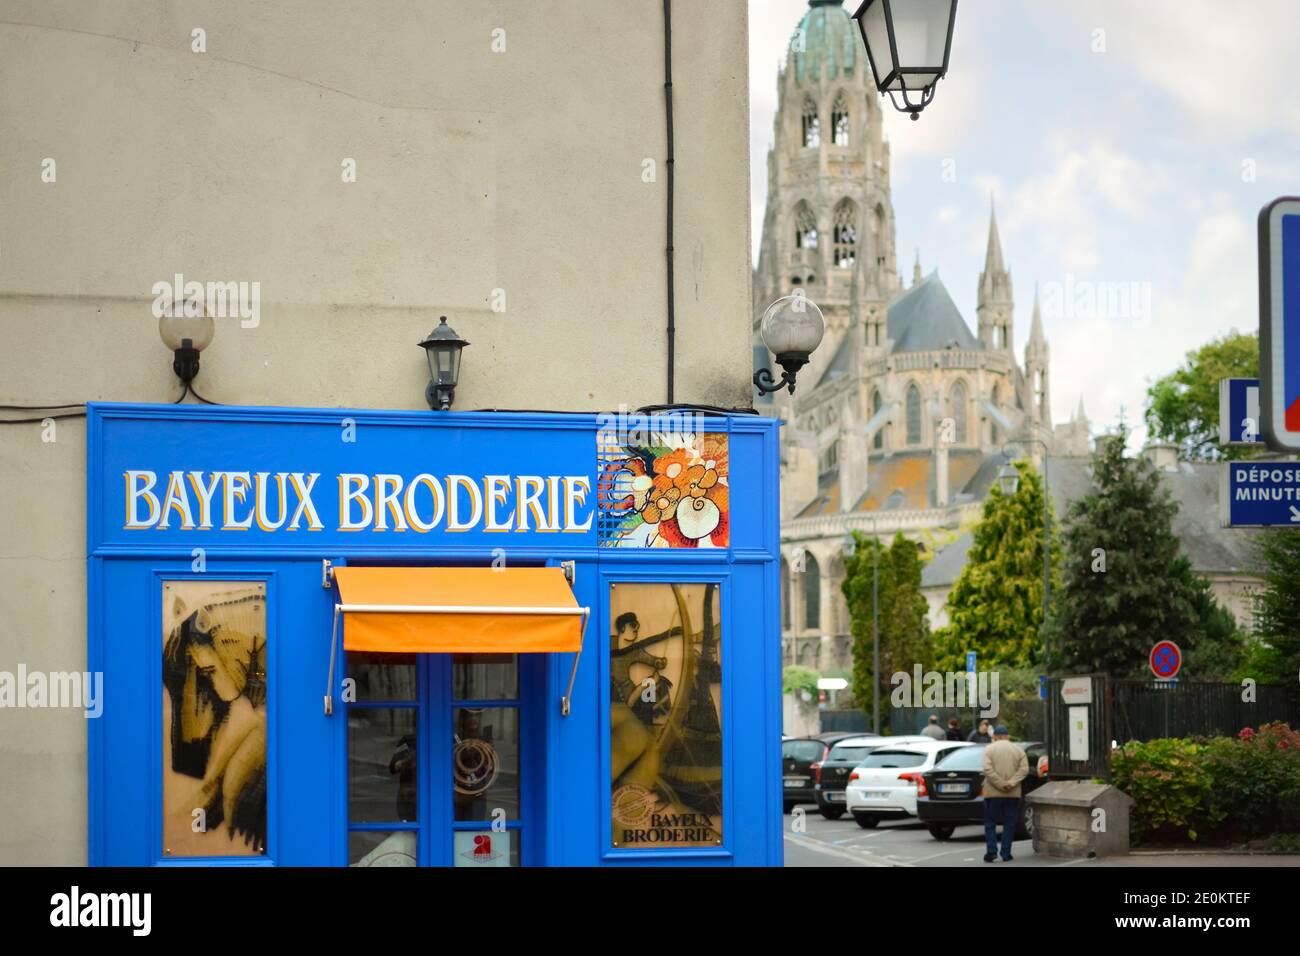 Una vista generale del cartello Bayeux Broderie Shop con la storica Cattedrale in vista, nella città storica di Bayeux Francia. Foto Stock